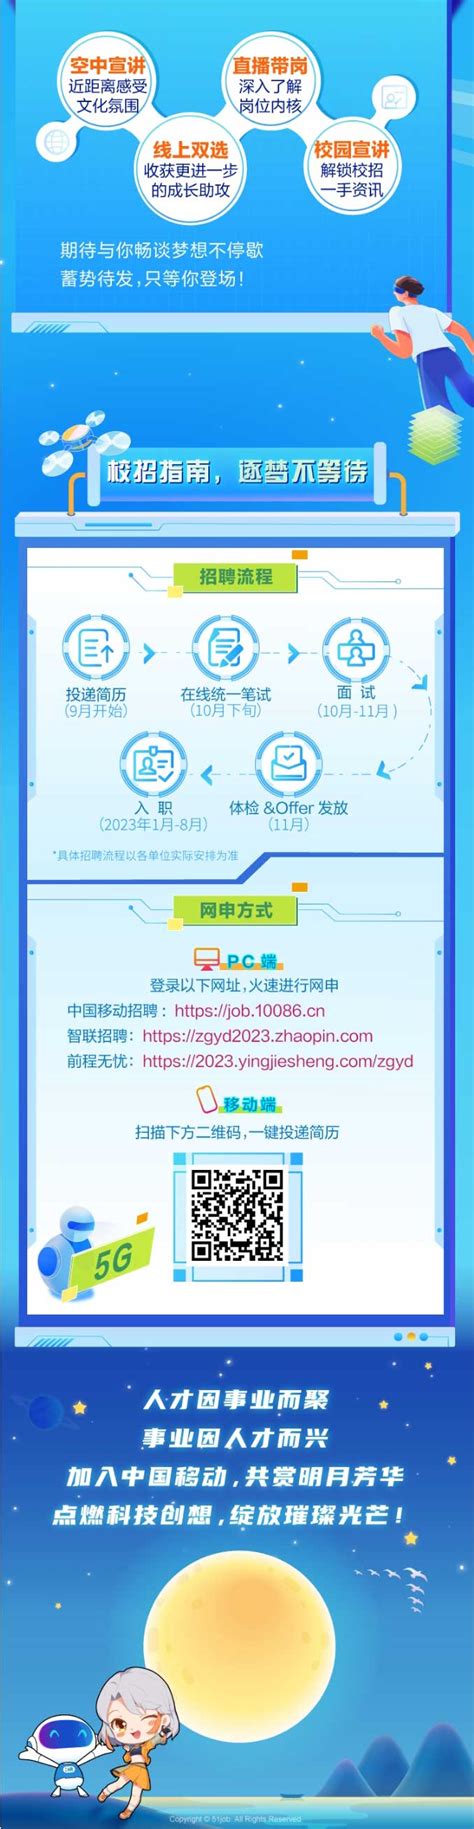 2023中国移动校园招聘公告_辽宁考试信息网